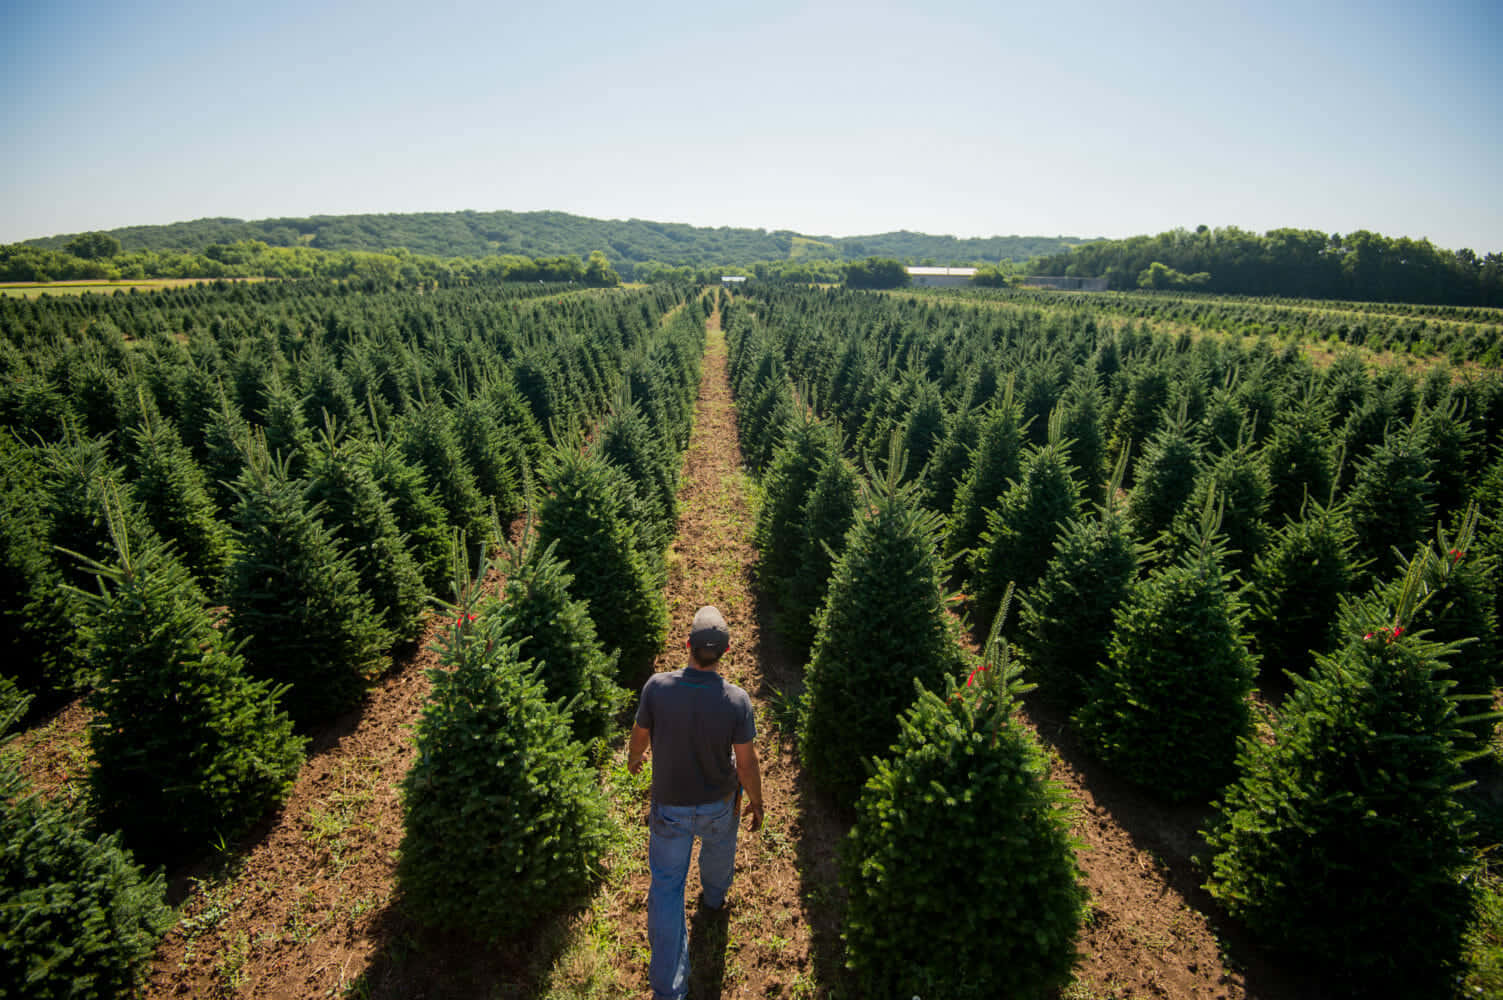 Imagende Un Hombre Caminando En Una Plantación De Árboles De Navidad